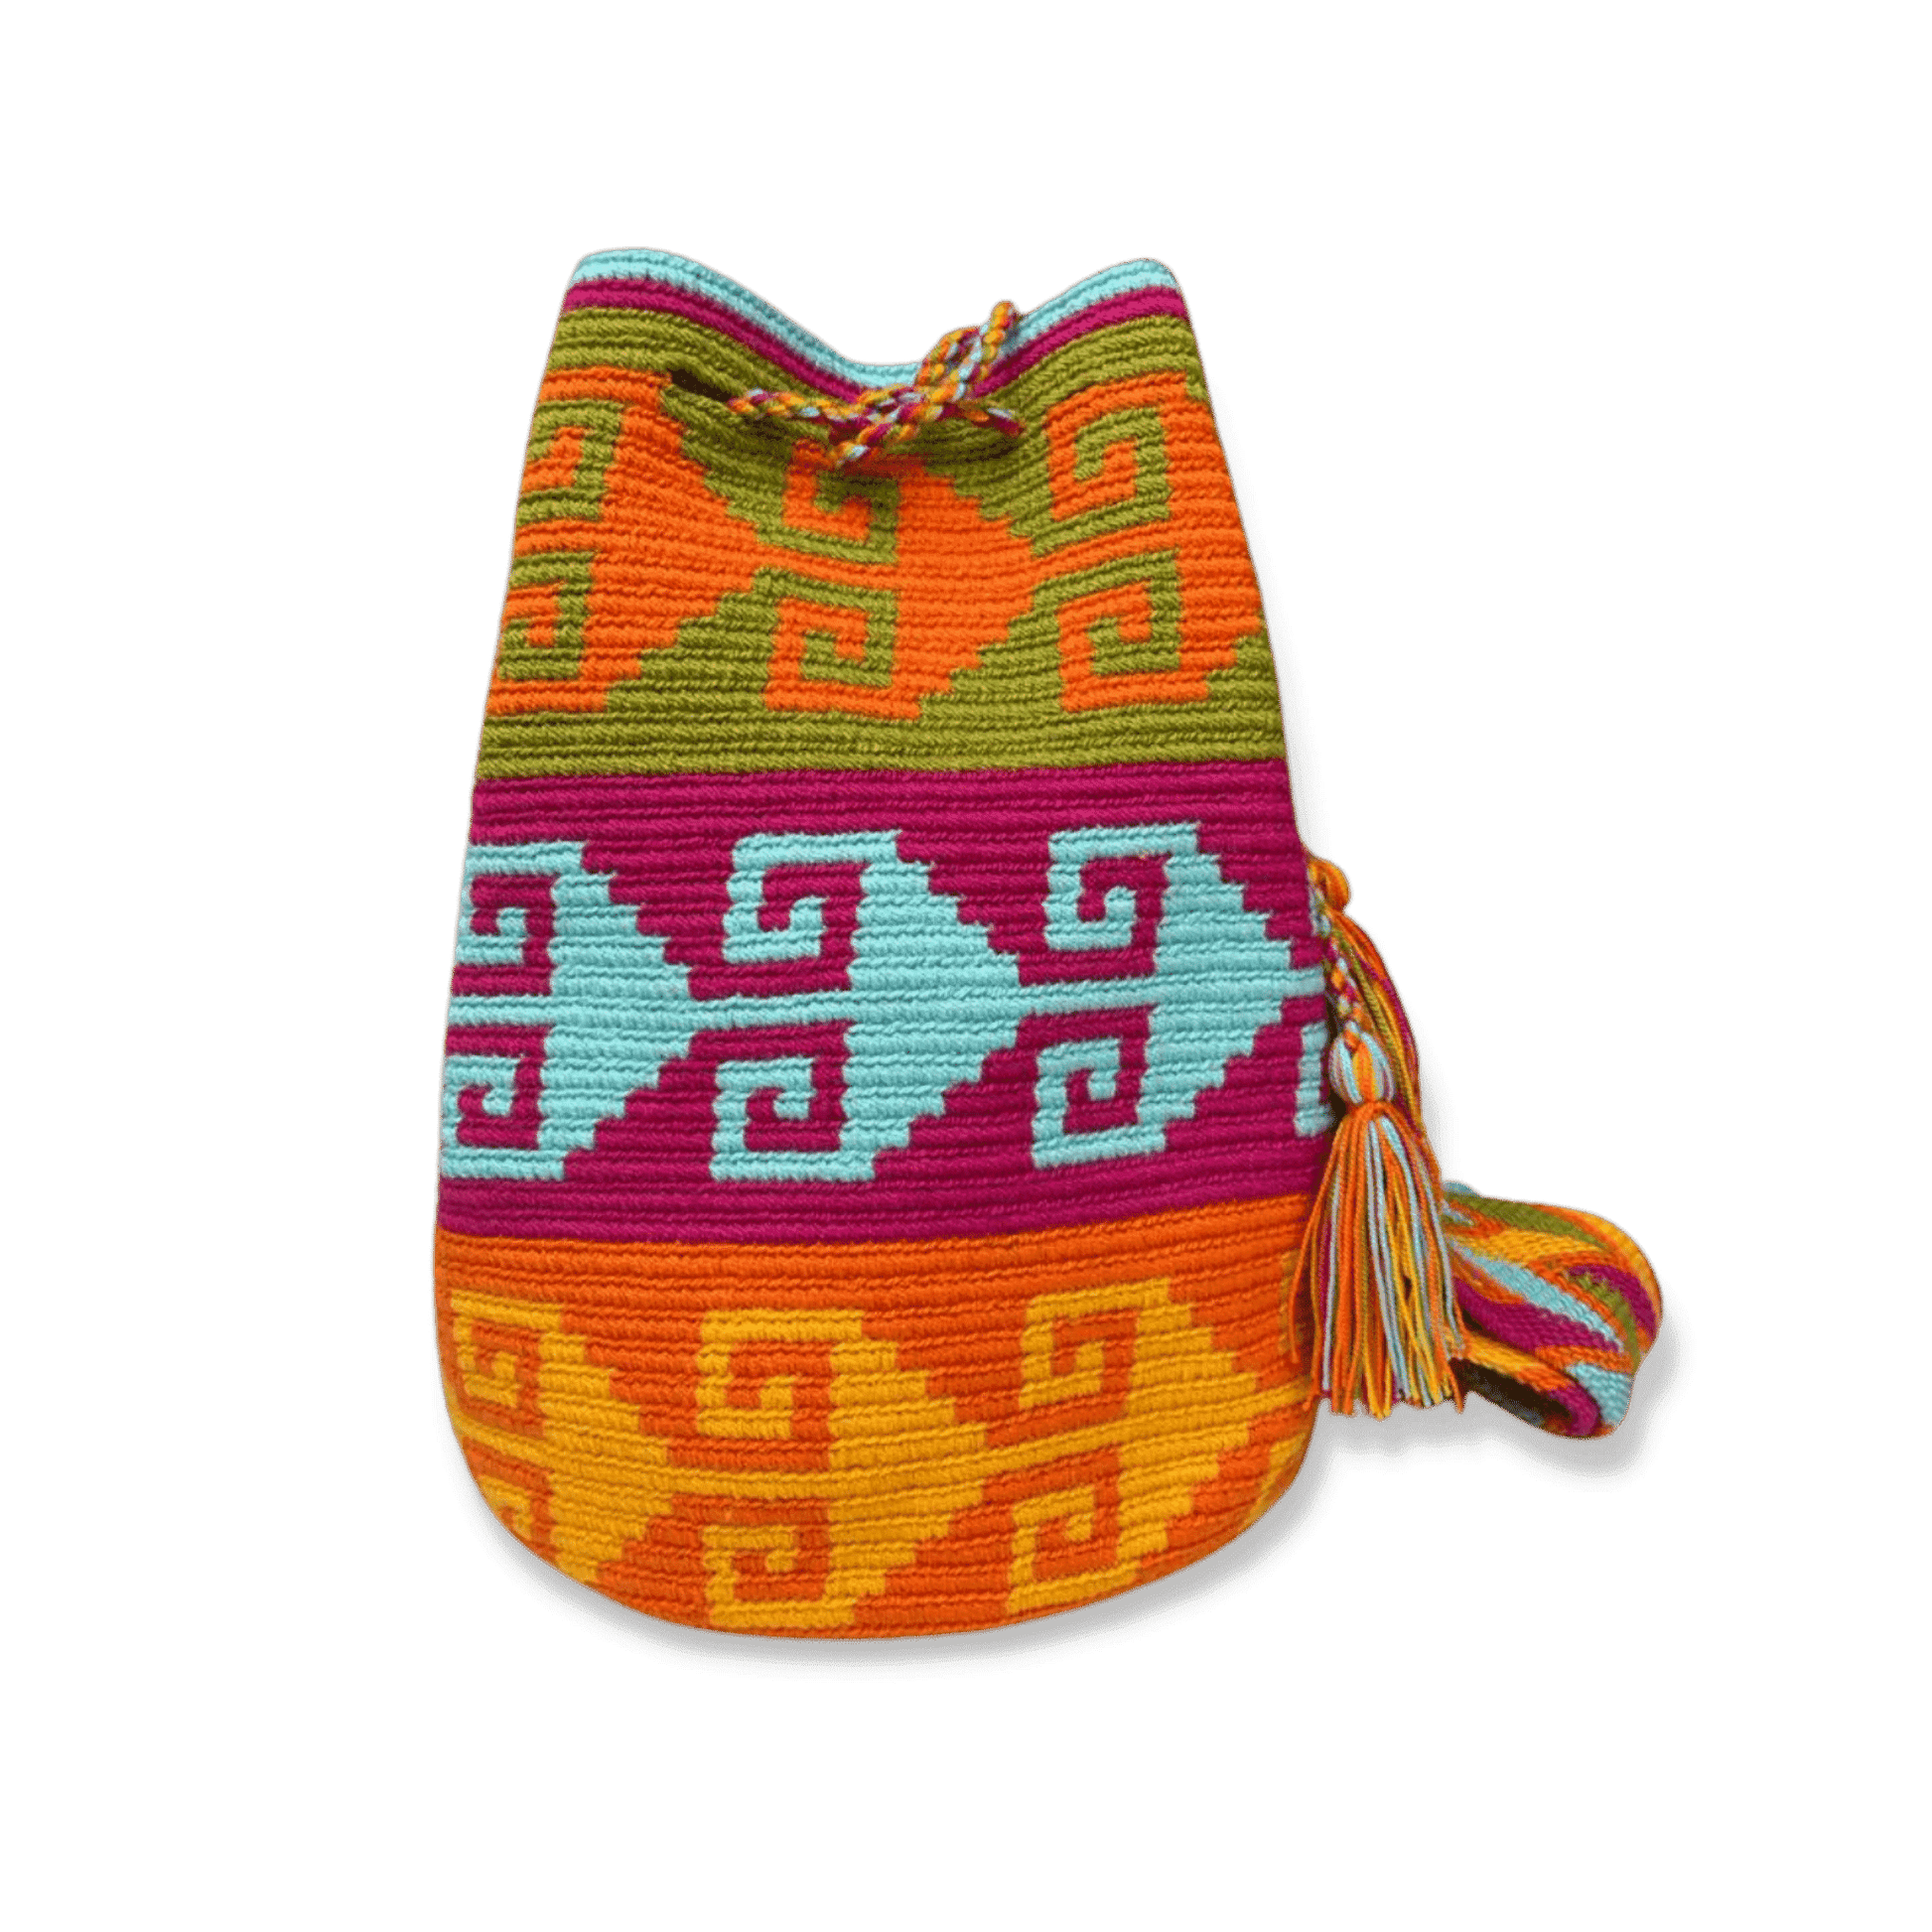 Mochila wayuu ideal para mujer de colores vivos y pasteles